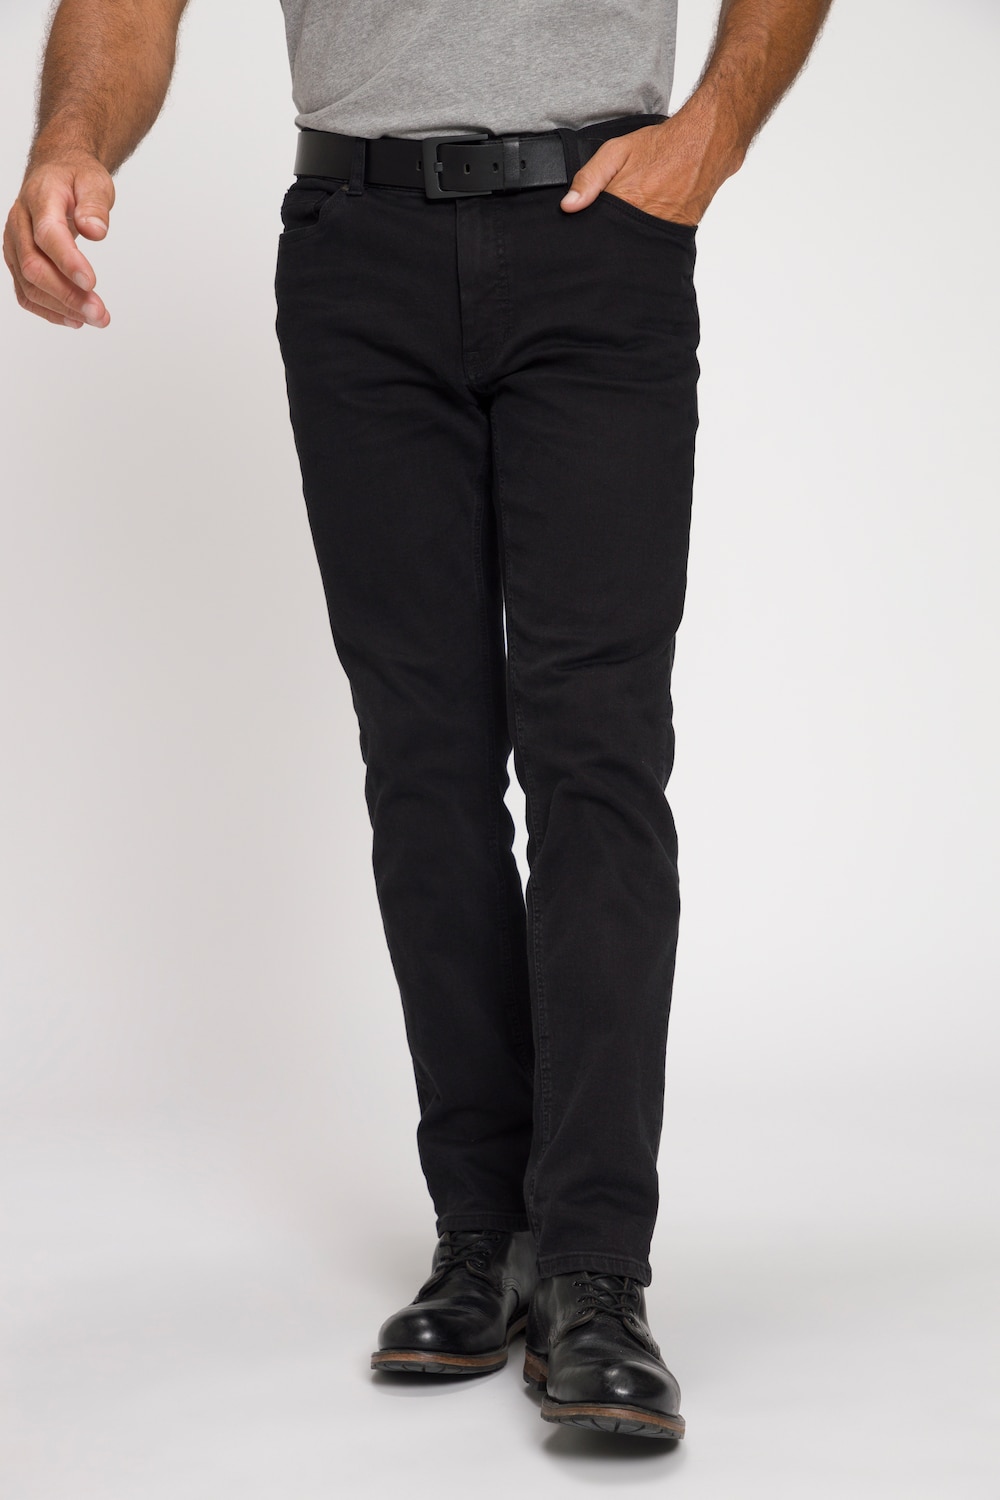 Große Größen Jeans, Herren, schwarz, Größe: 62, Baumwolle, JP1880 von JP1880